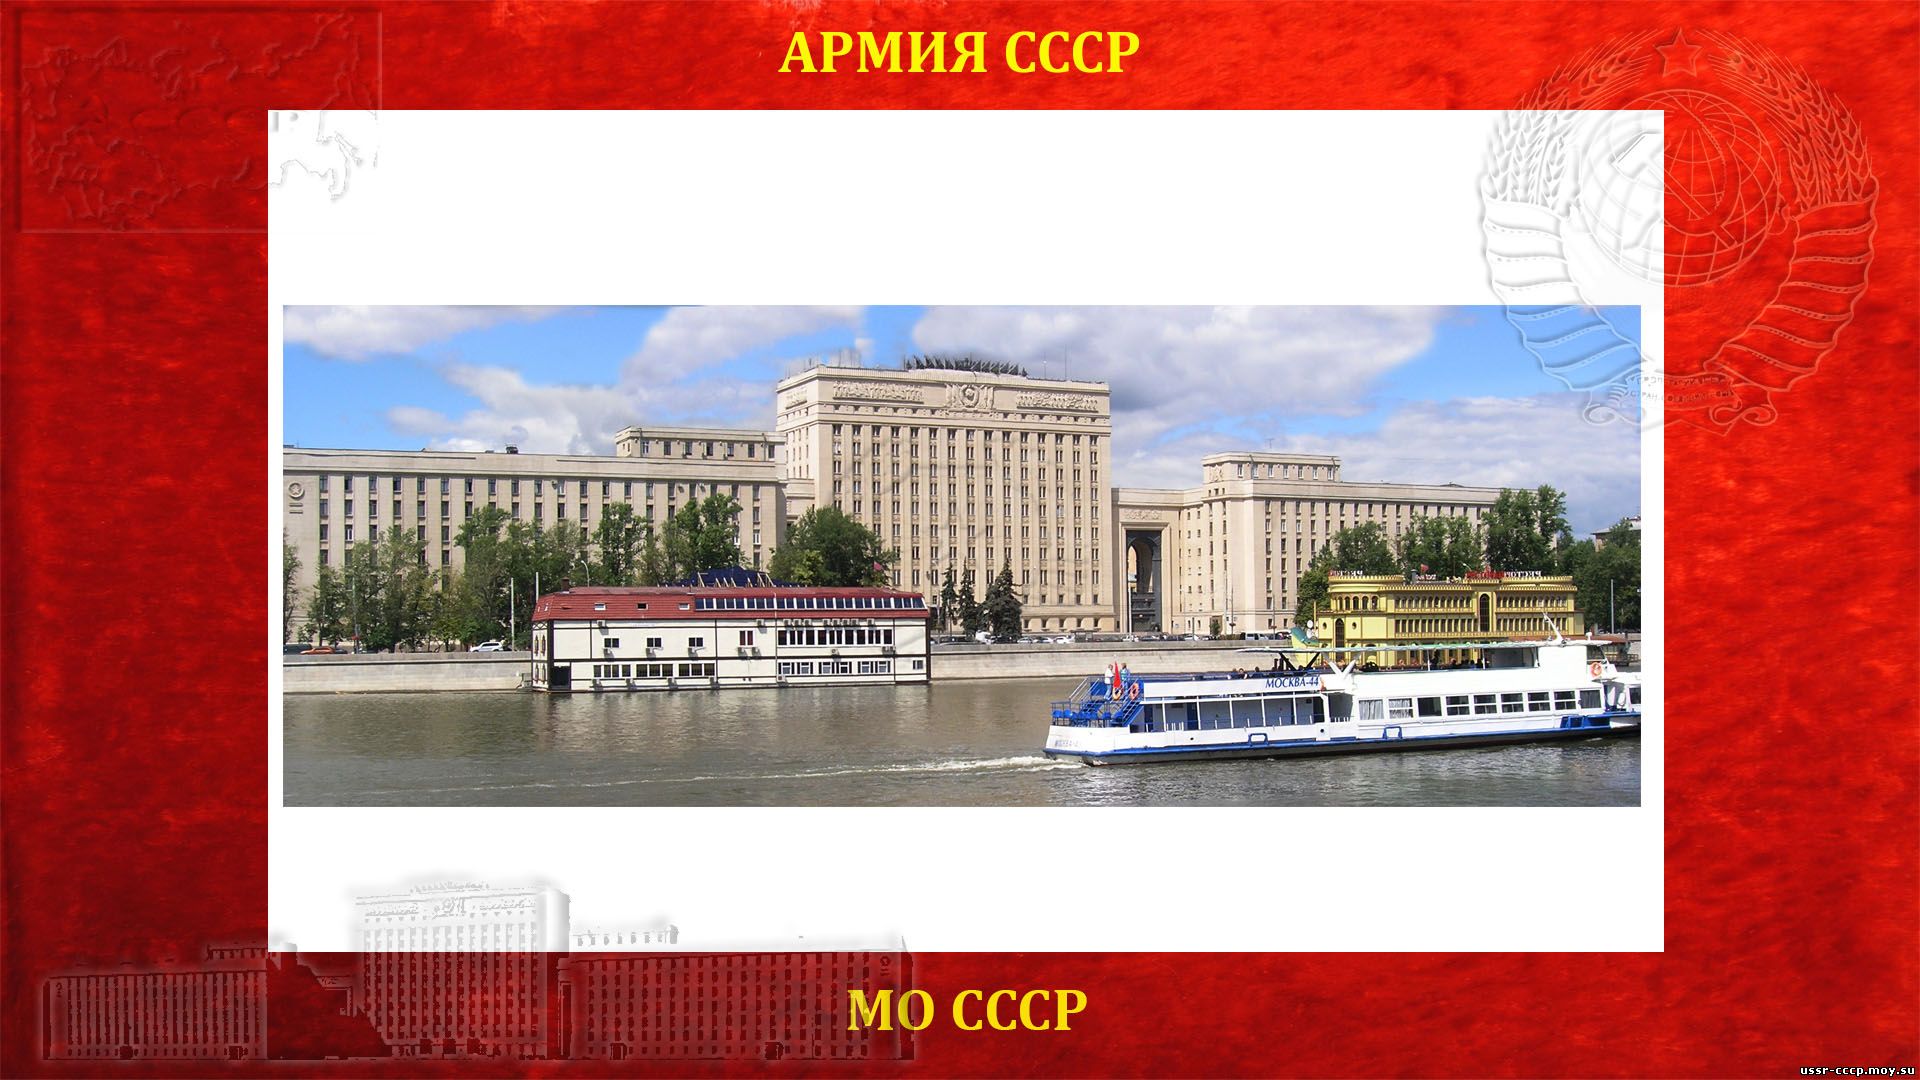 Министерство обороны СССР — (МО СССР) (повествование)